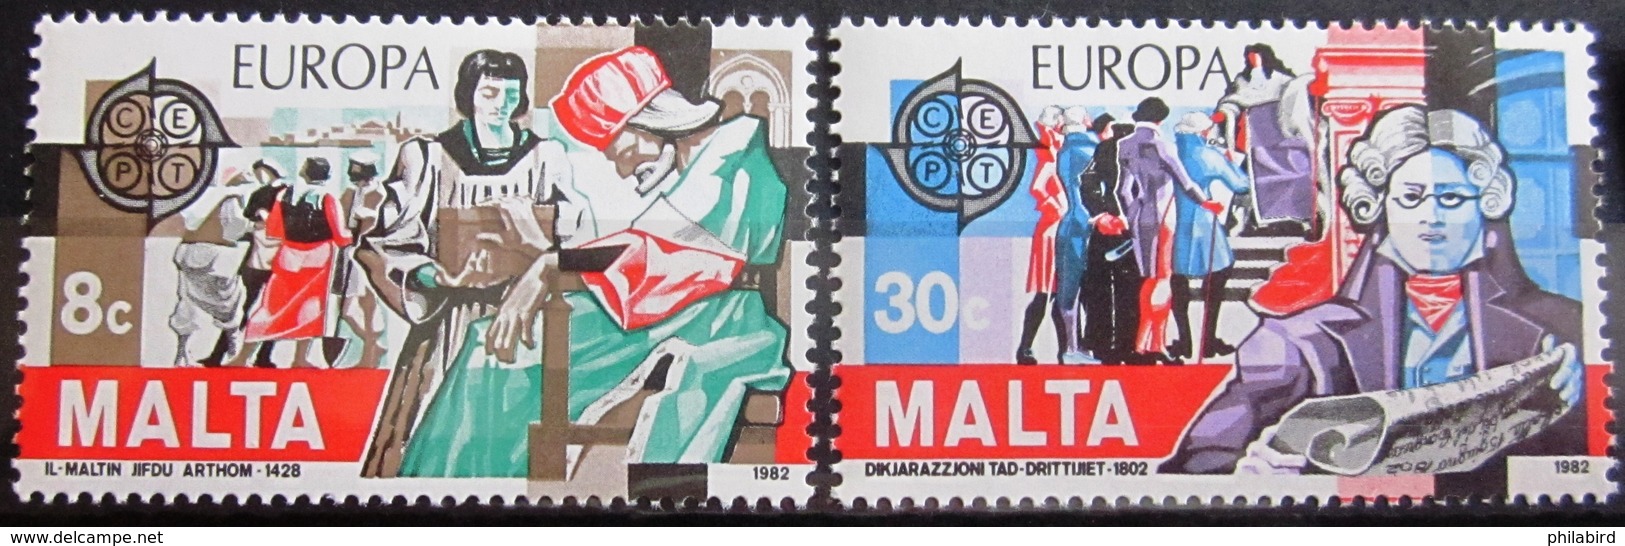 EUROPA            Année 1982         MALTE          N° 649/650             NEUF** - 1982